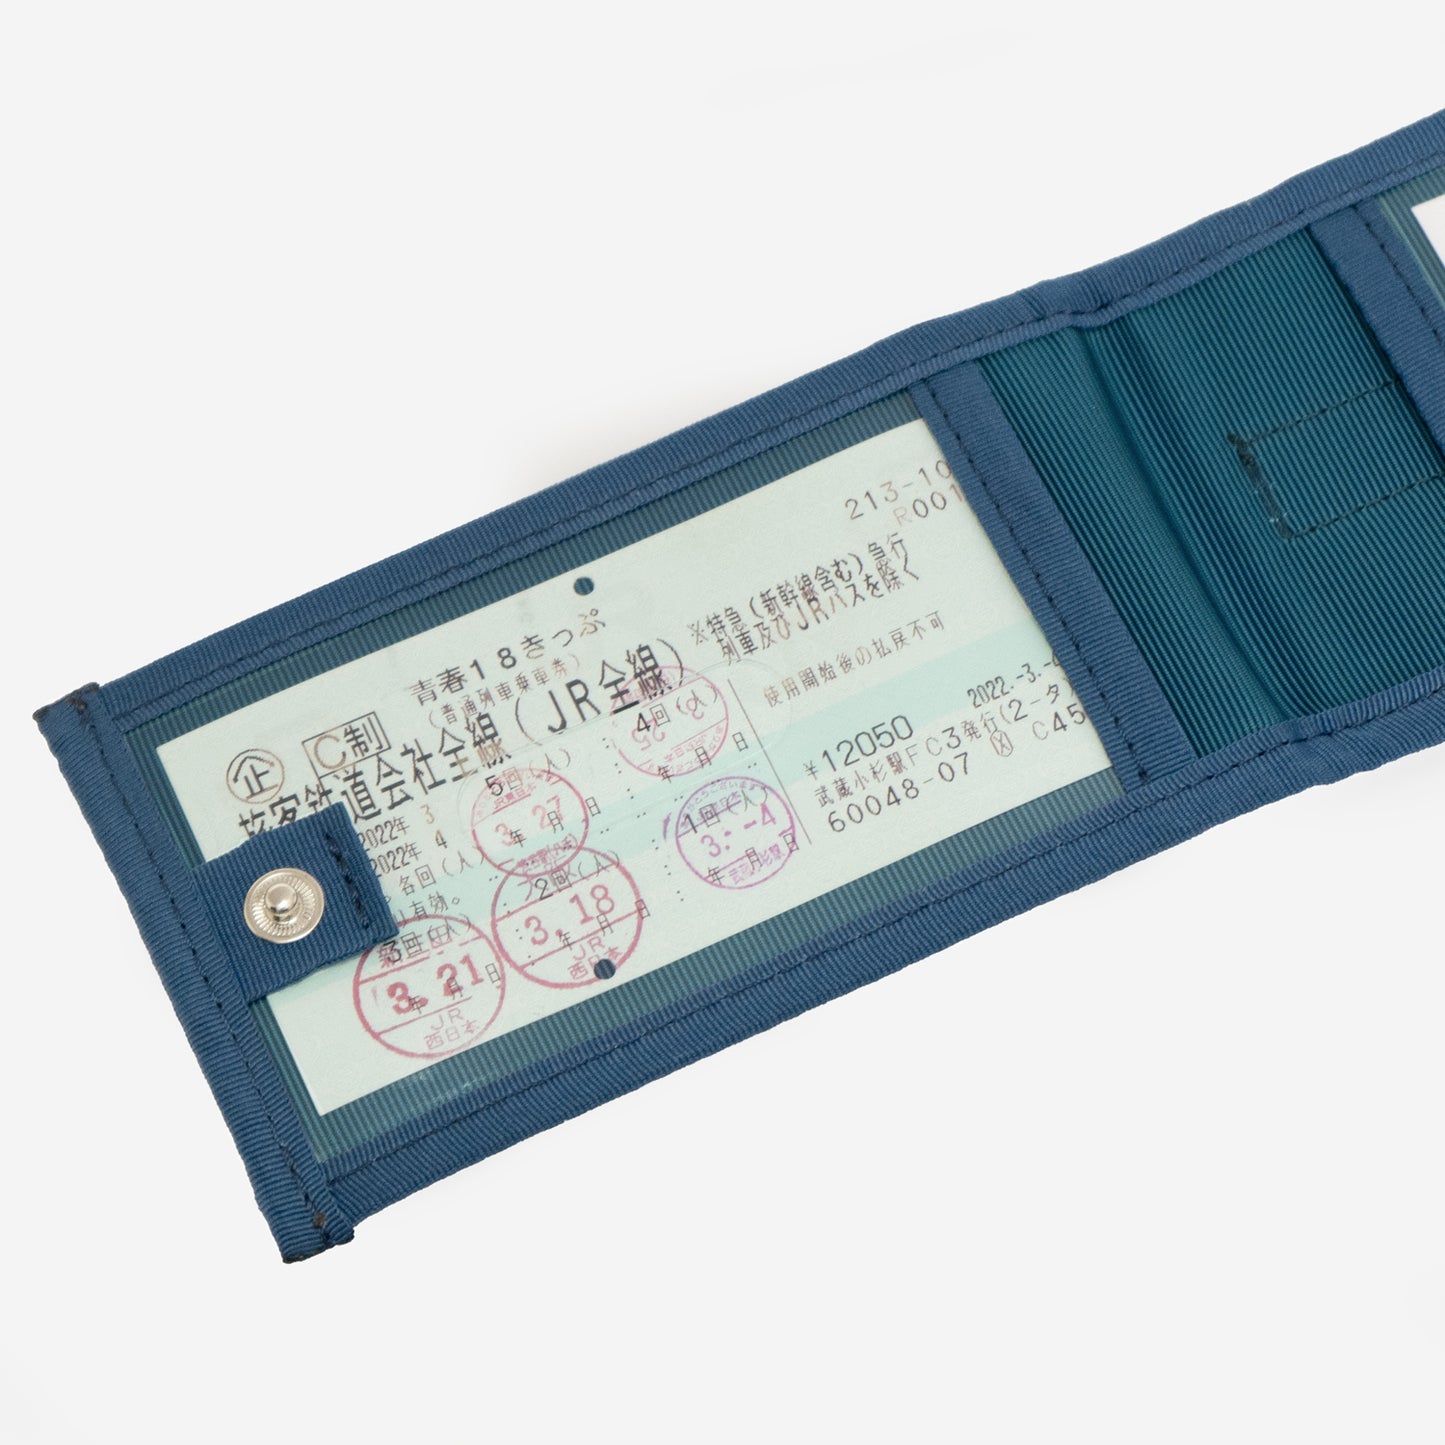 「N700系typeA 東海道新幹線モケットラゲージタグ」はホックで留めて、収納しているチケットや個人情報を隠すことができます。